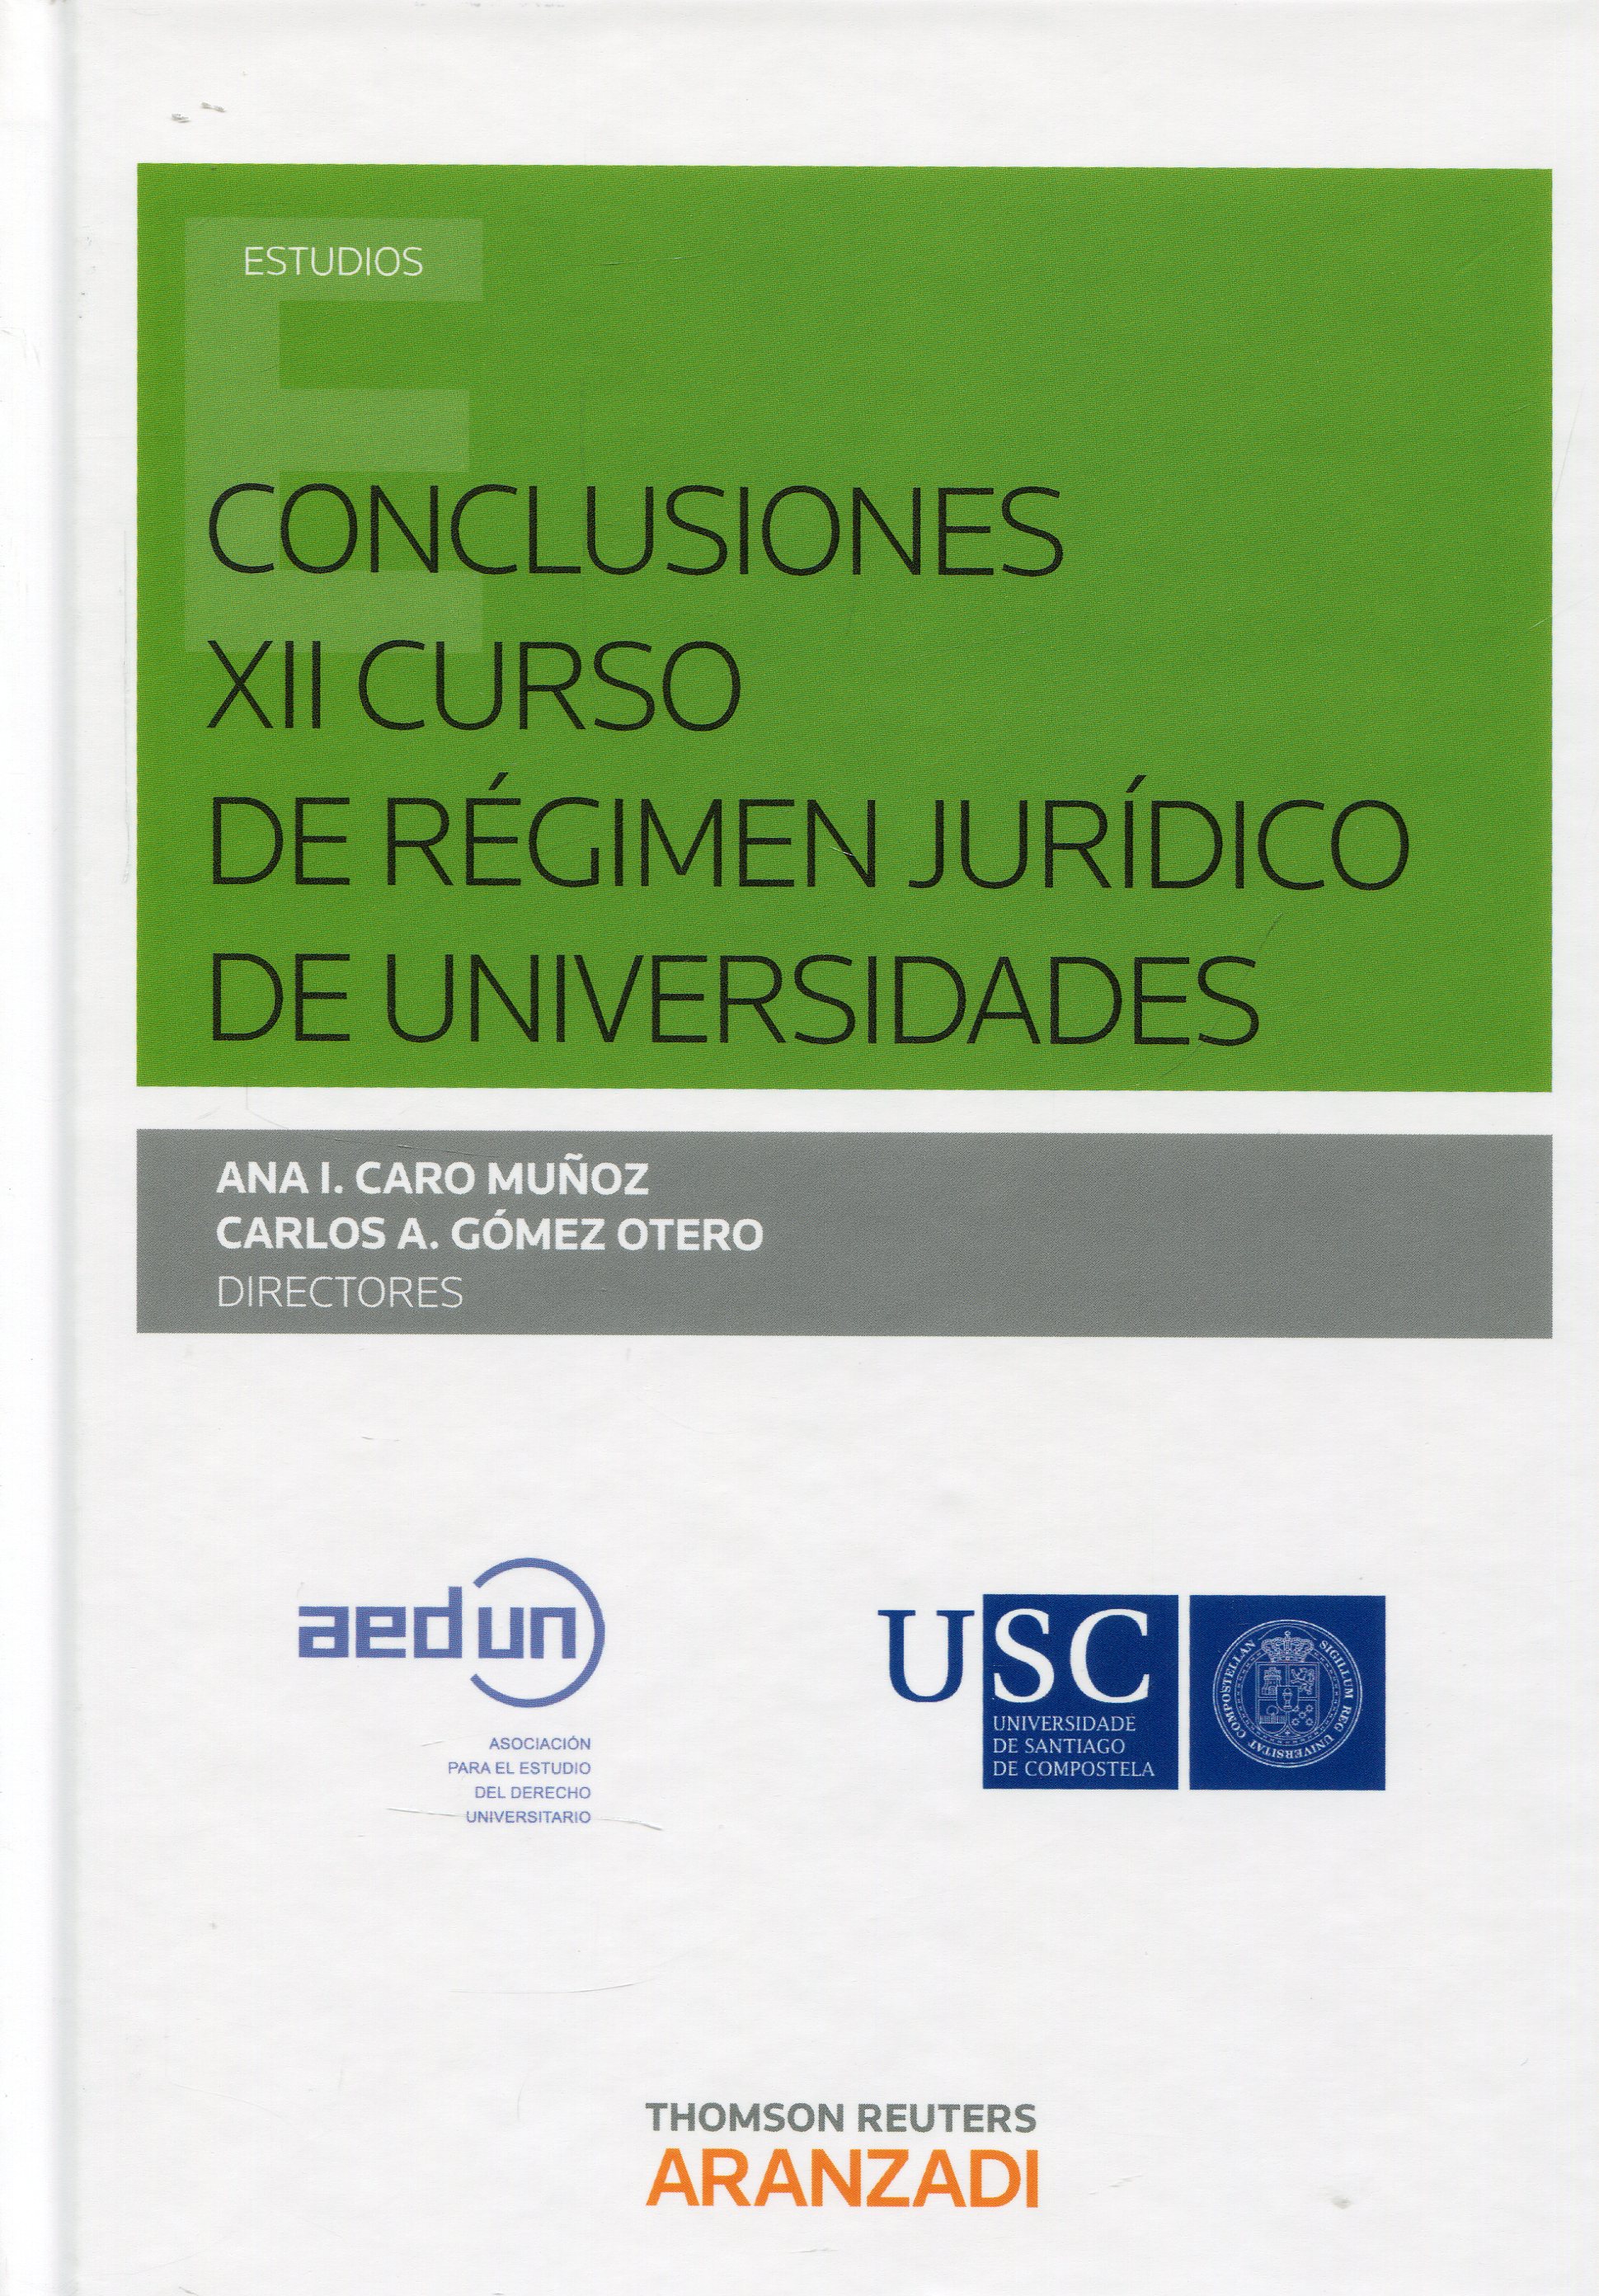 Imagen de portada del libro XII Curso de Régimen Jurídico de Universidades